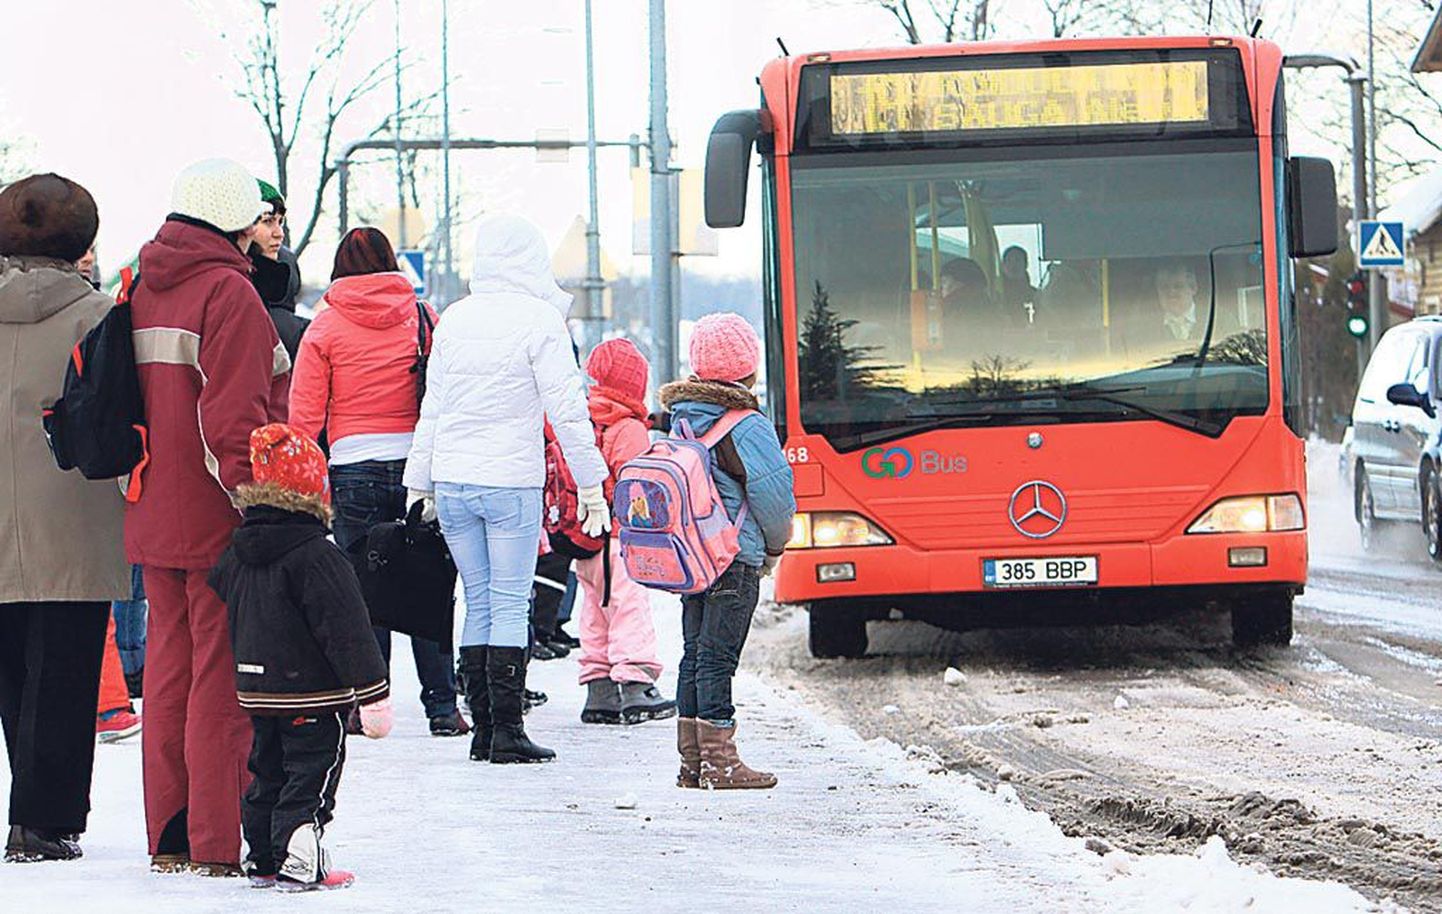 Õpilaste tasuta bussisõidul on nii poolt- kui vastuargumente.